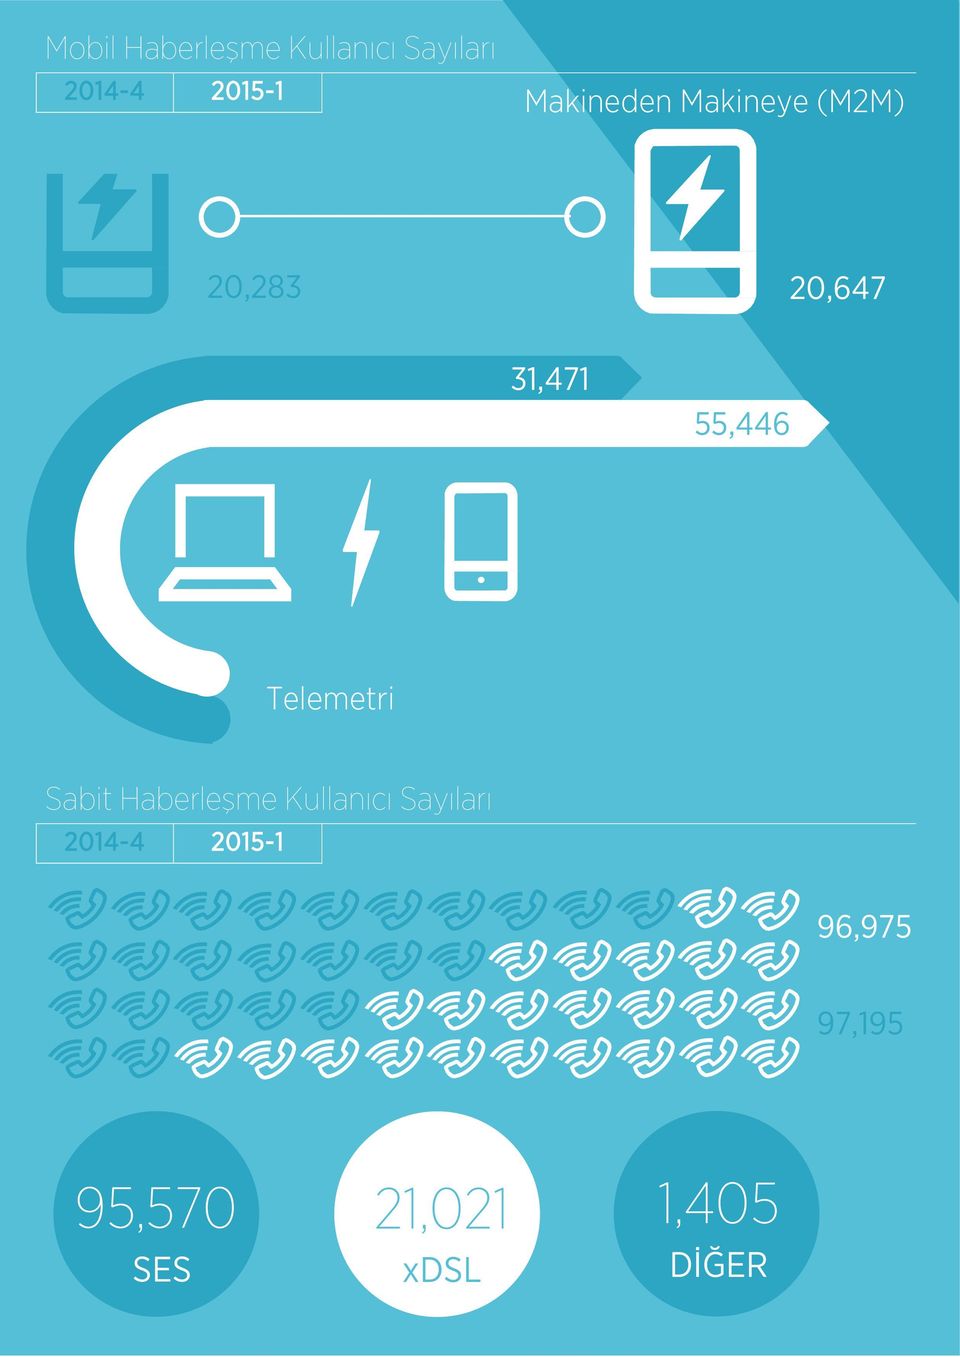 Telemetri Sabit Haberleşme Kullanıcı Sayıları 2014-4